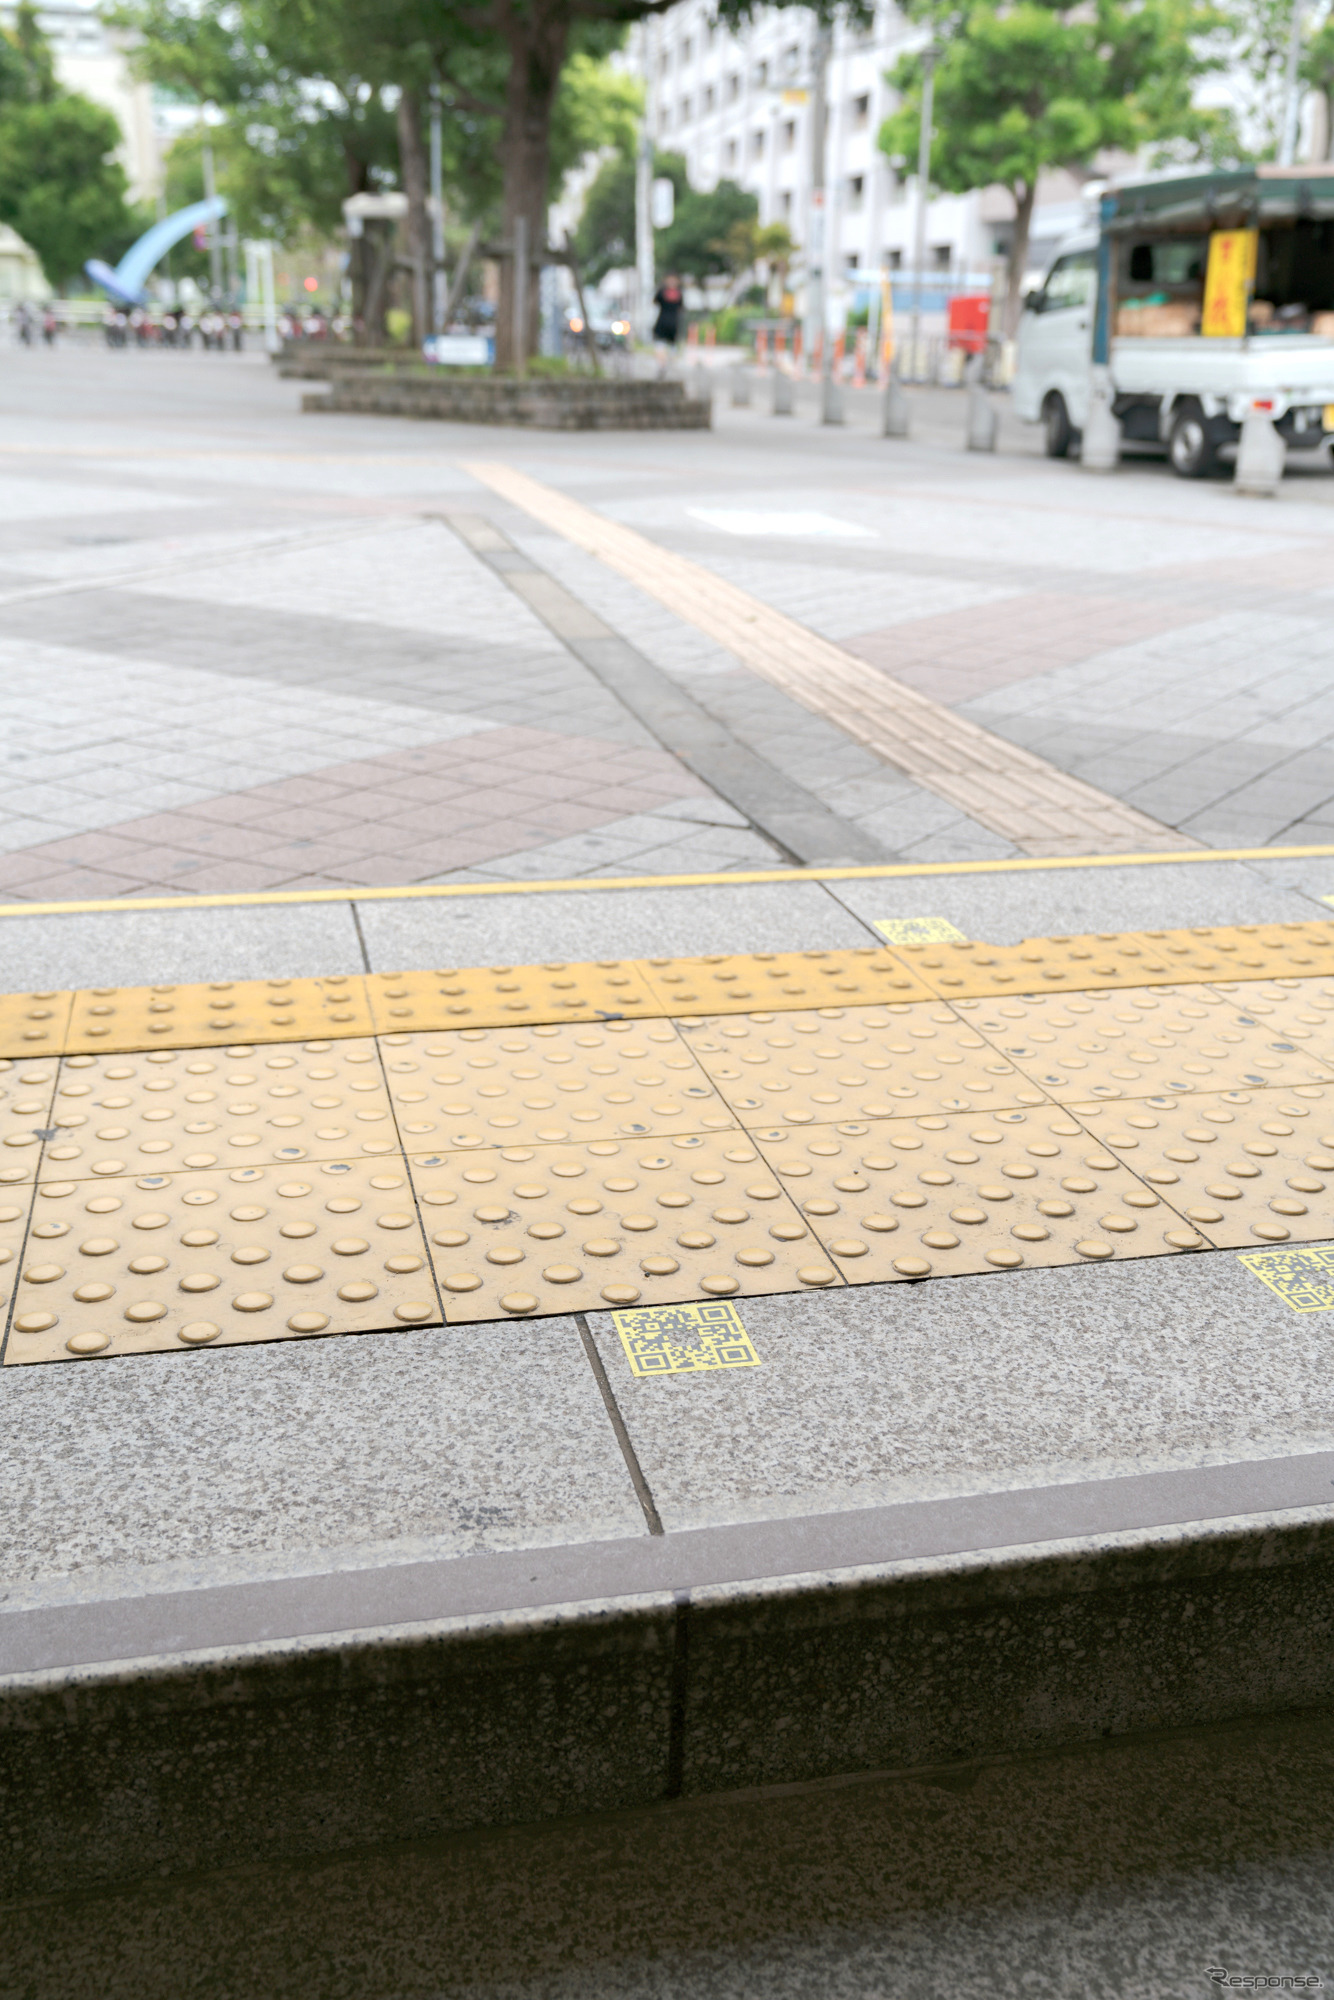 辰巳駅も、新木場駅も地上までQRコードは用意されている。この写真は辰巳駅1番出口を地上に出たところ。